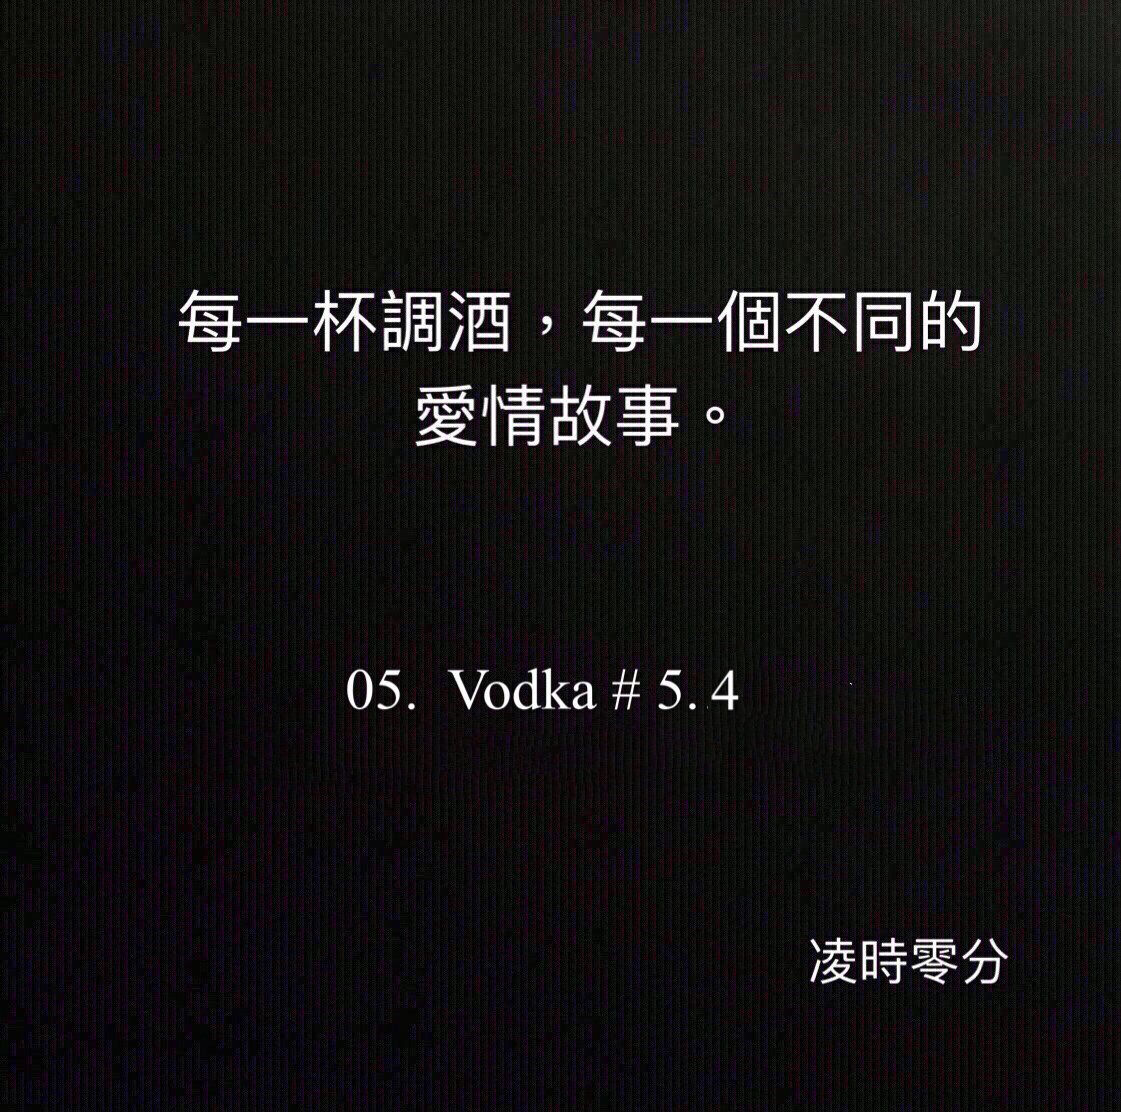 （短篇故事）每一杯調酒，每一個不同的愛情故事 05. Vodka #5.4